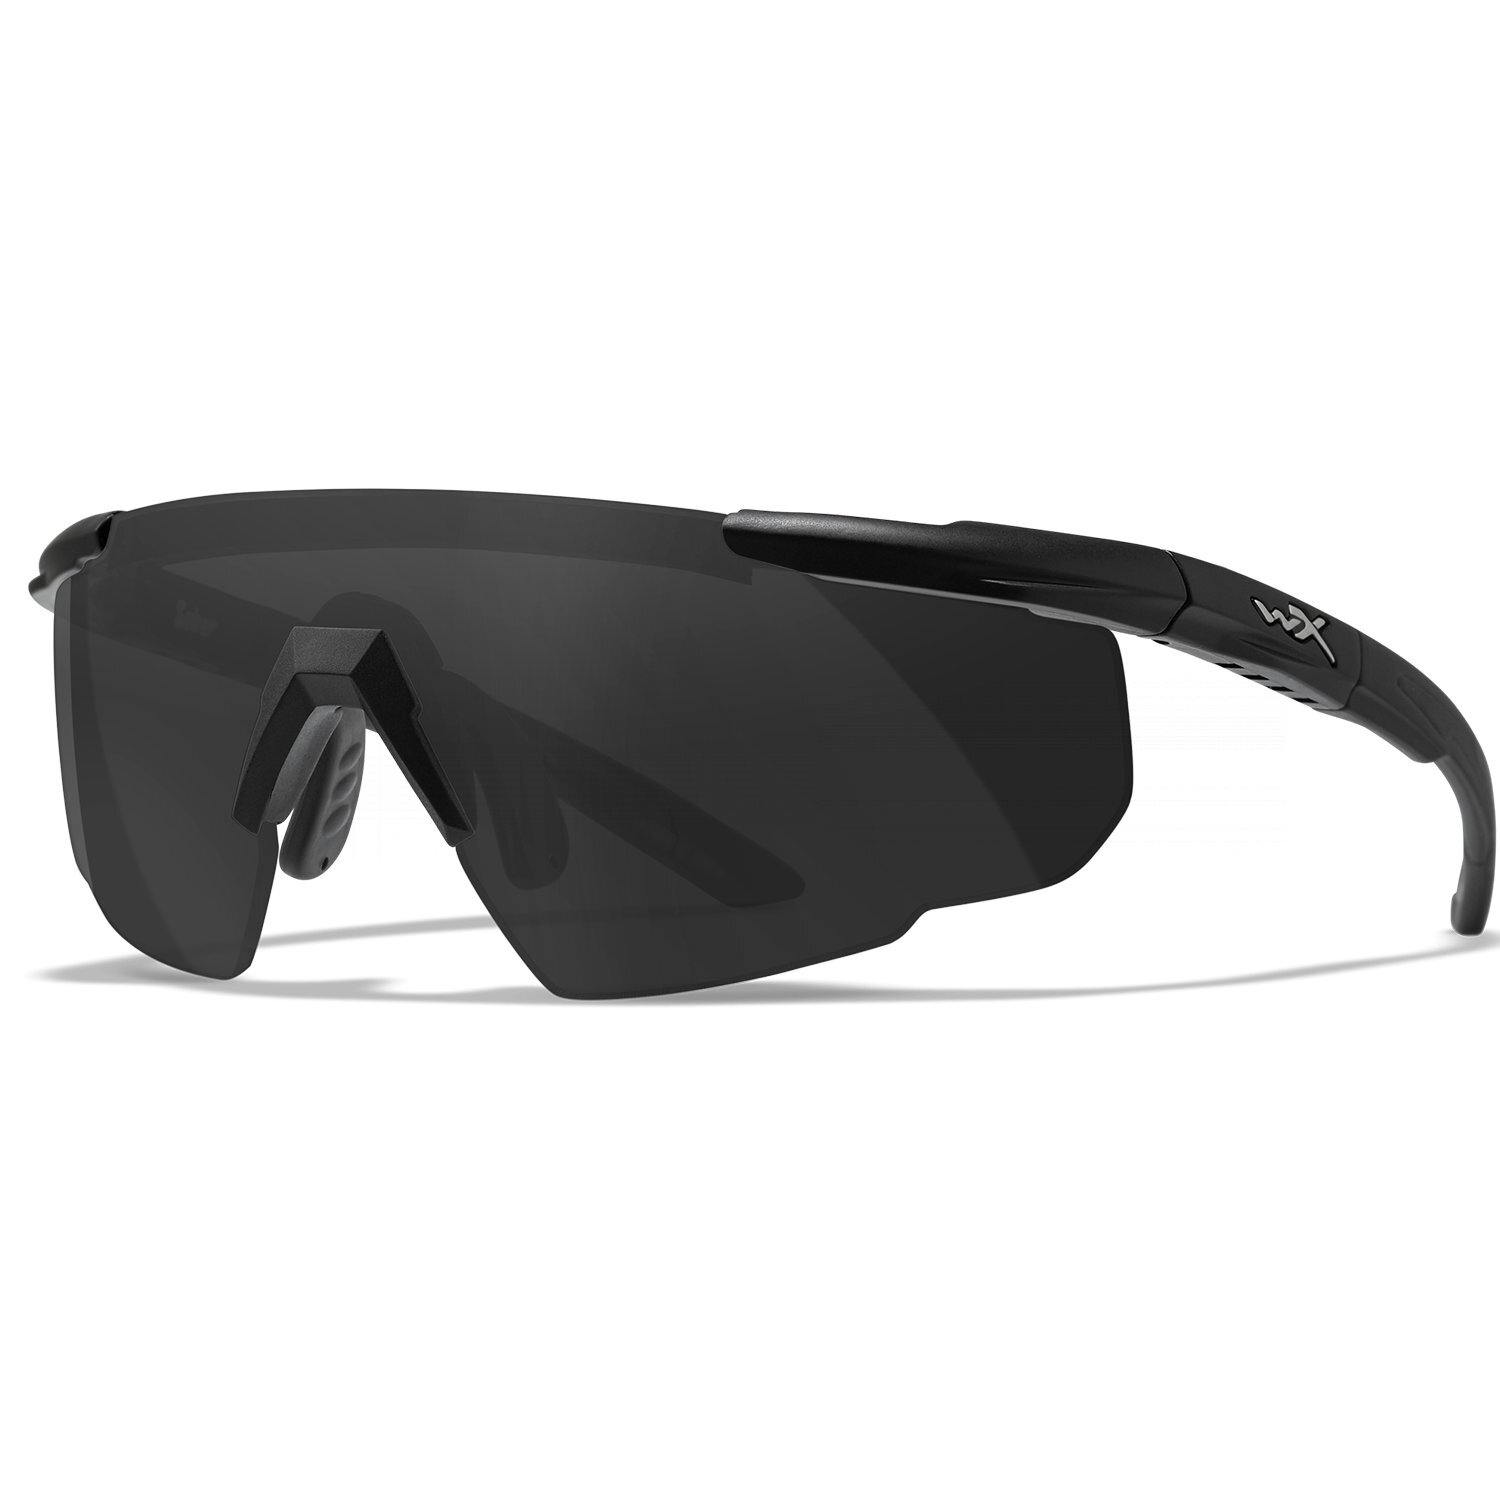 Тактические очки Wiley-X Saber Advanced 302 Smoke Grey Lens